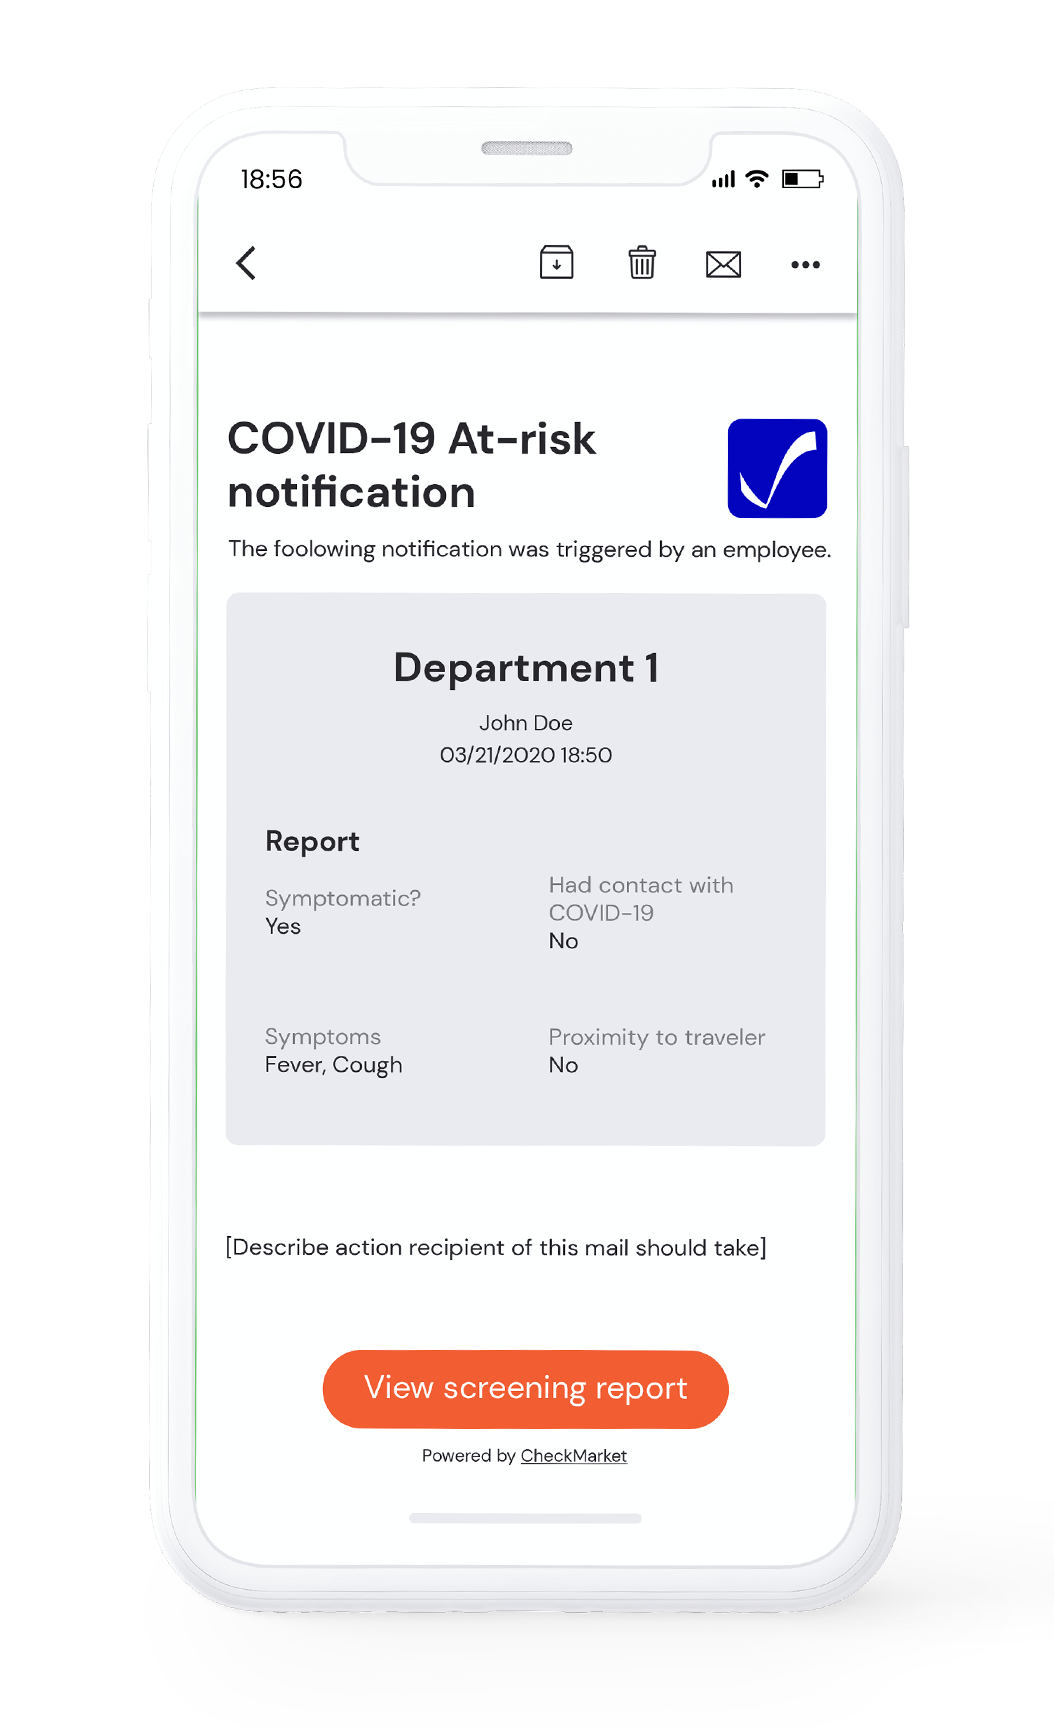 COVID-19 screening at-risk notification